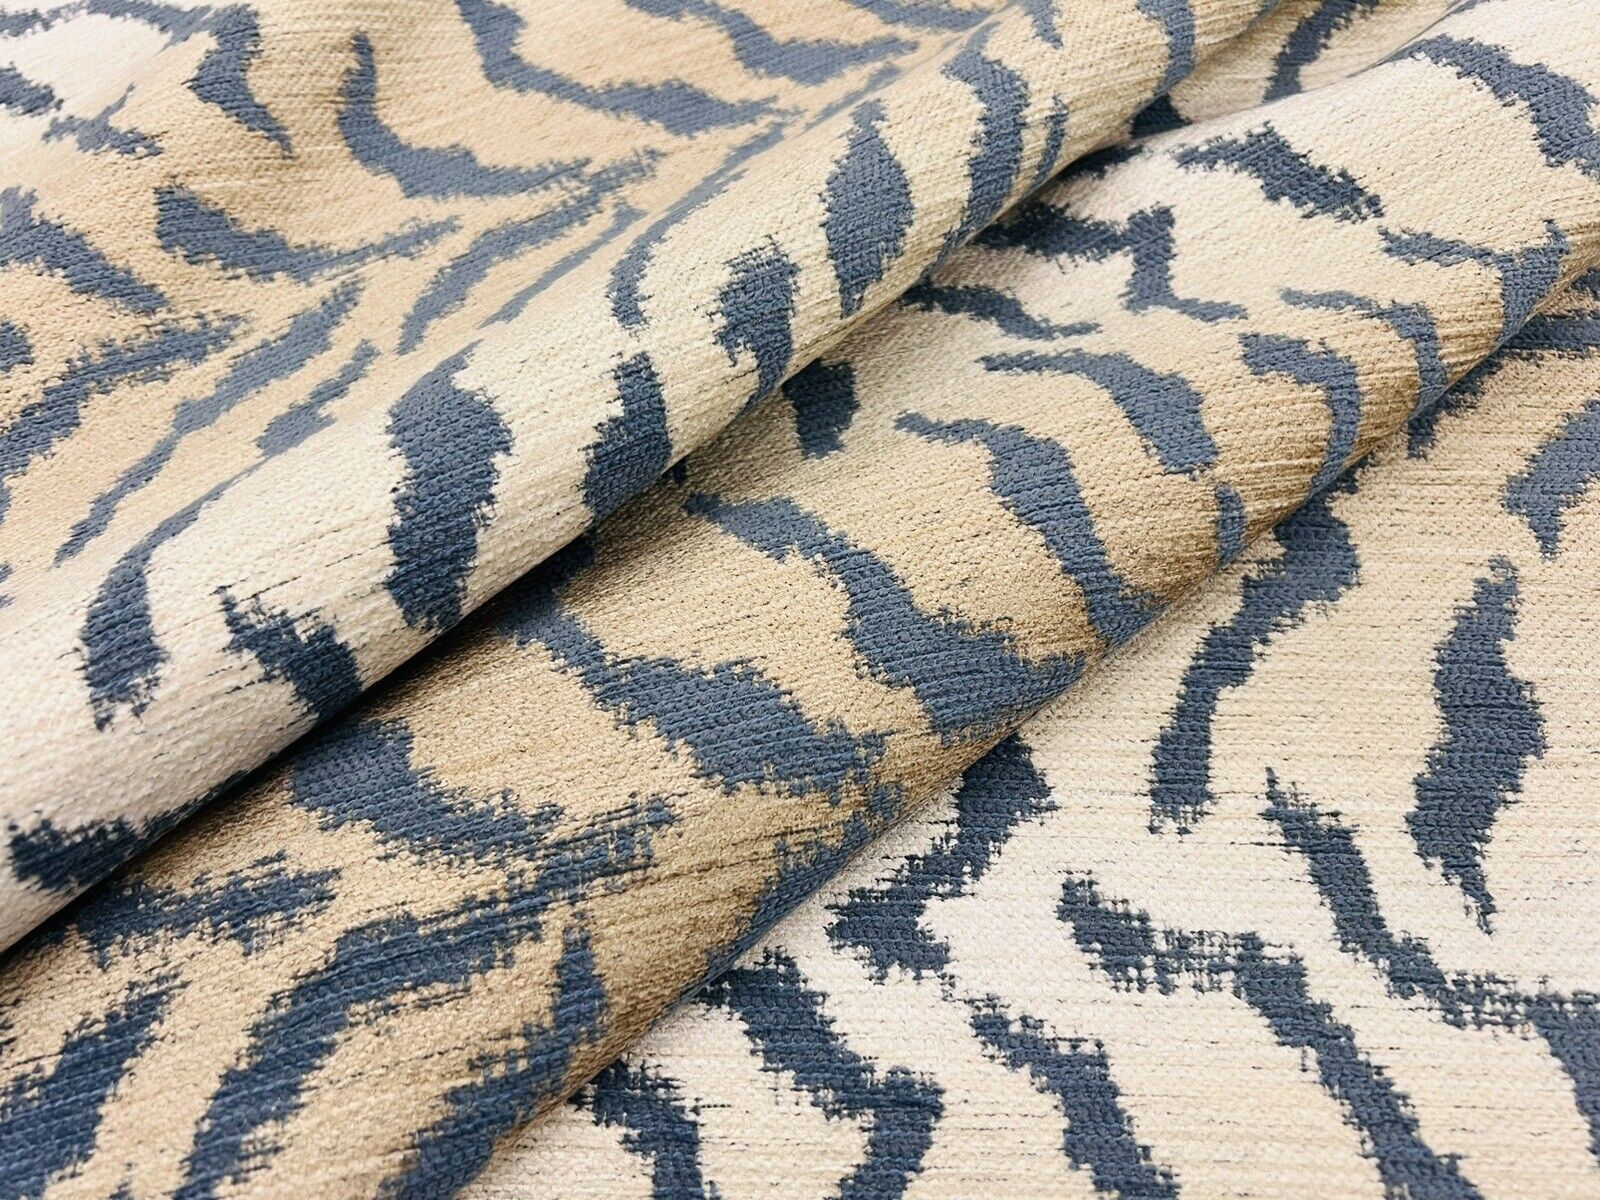 Kravet Blue Beige Performance Animal Tiger Skin Uphol Fabric 4.30 yds 34715.15